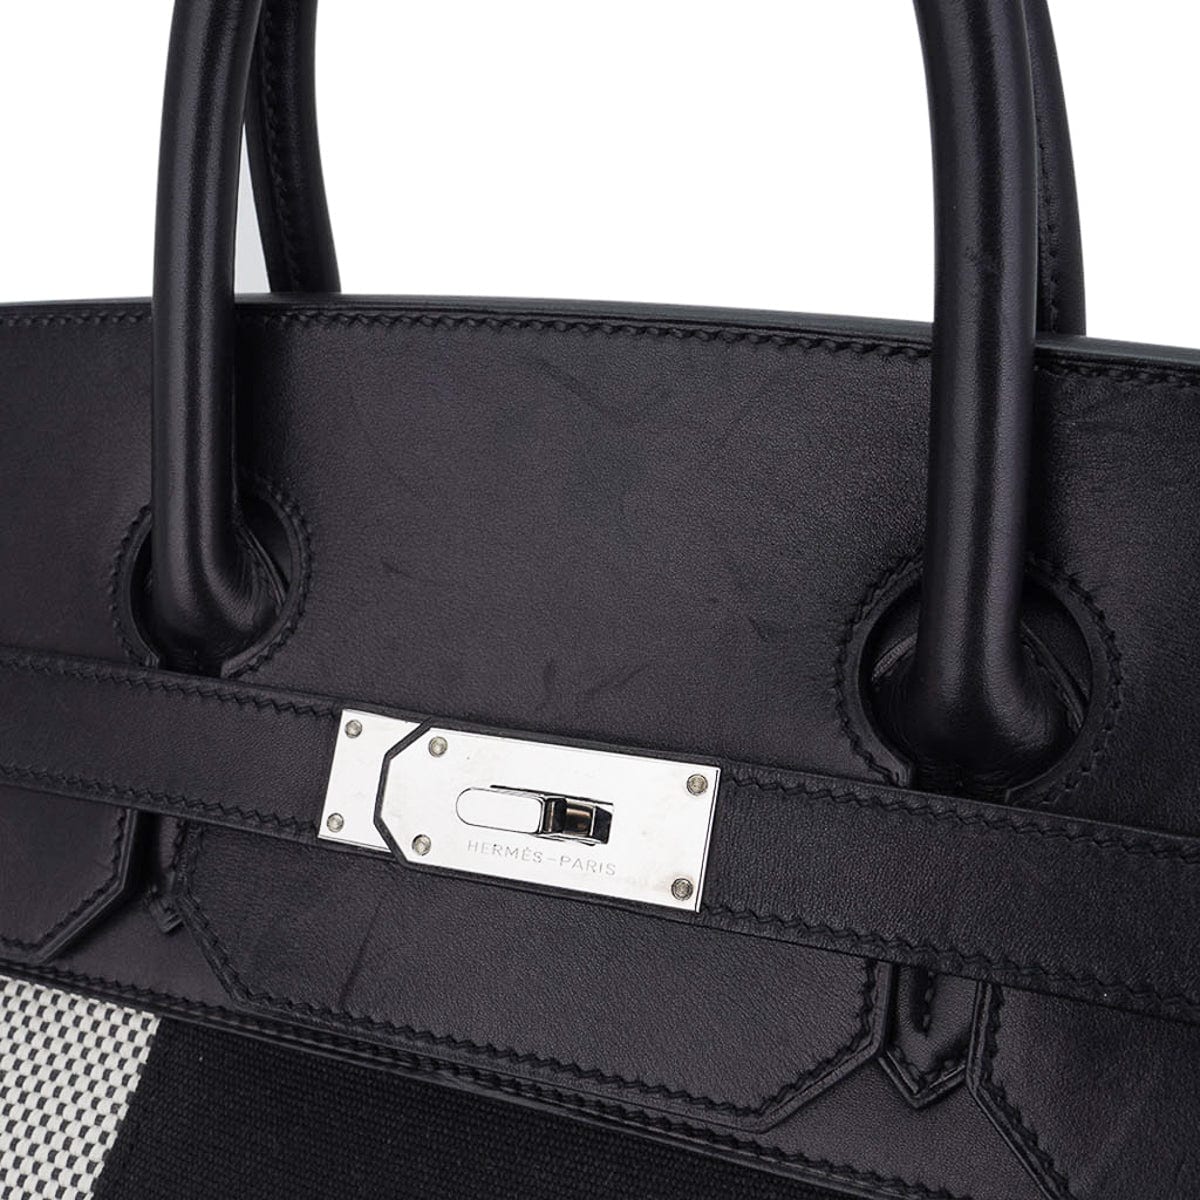 Hermès Haut à Courroies 40  Street style bags, Bags, Hermes bags